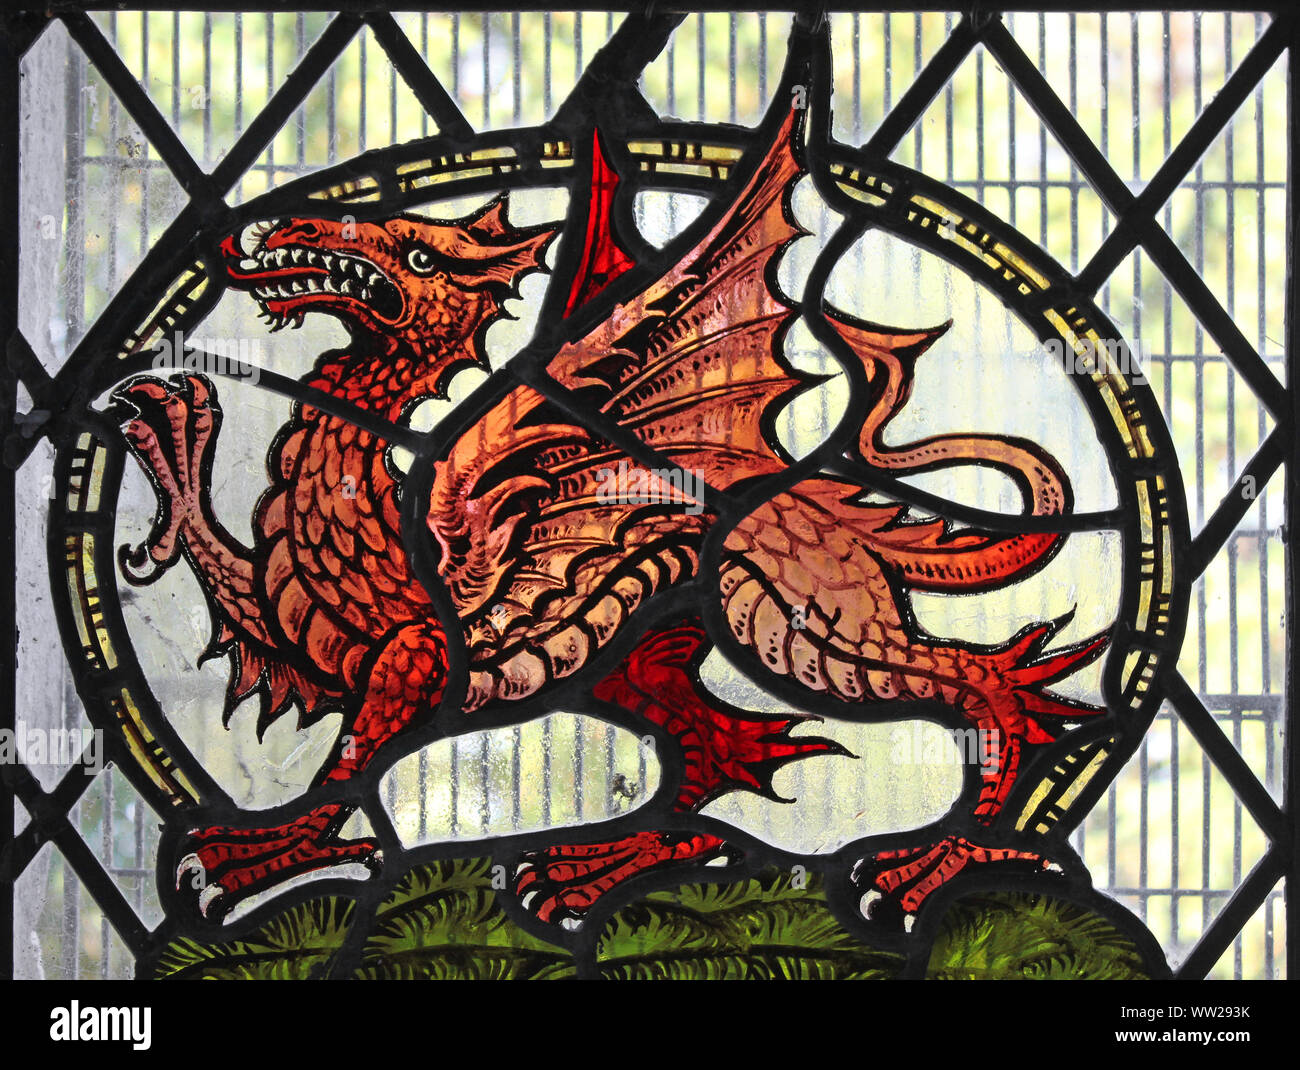 Welsh Dragon Stained Glass Windown in St Gwyddelan's Church, Dolwyddelan, Gwynedd, Wales Stock Photo